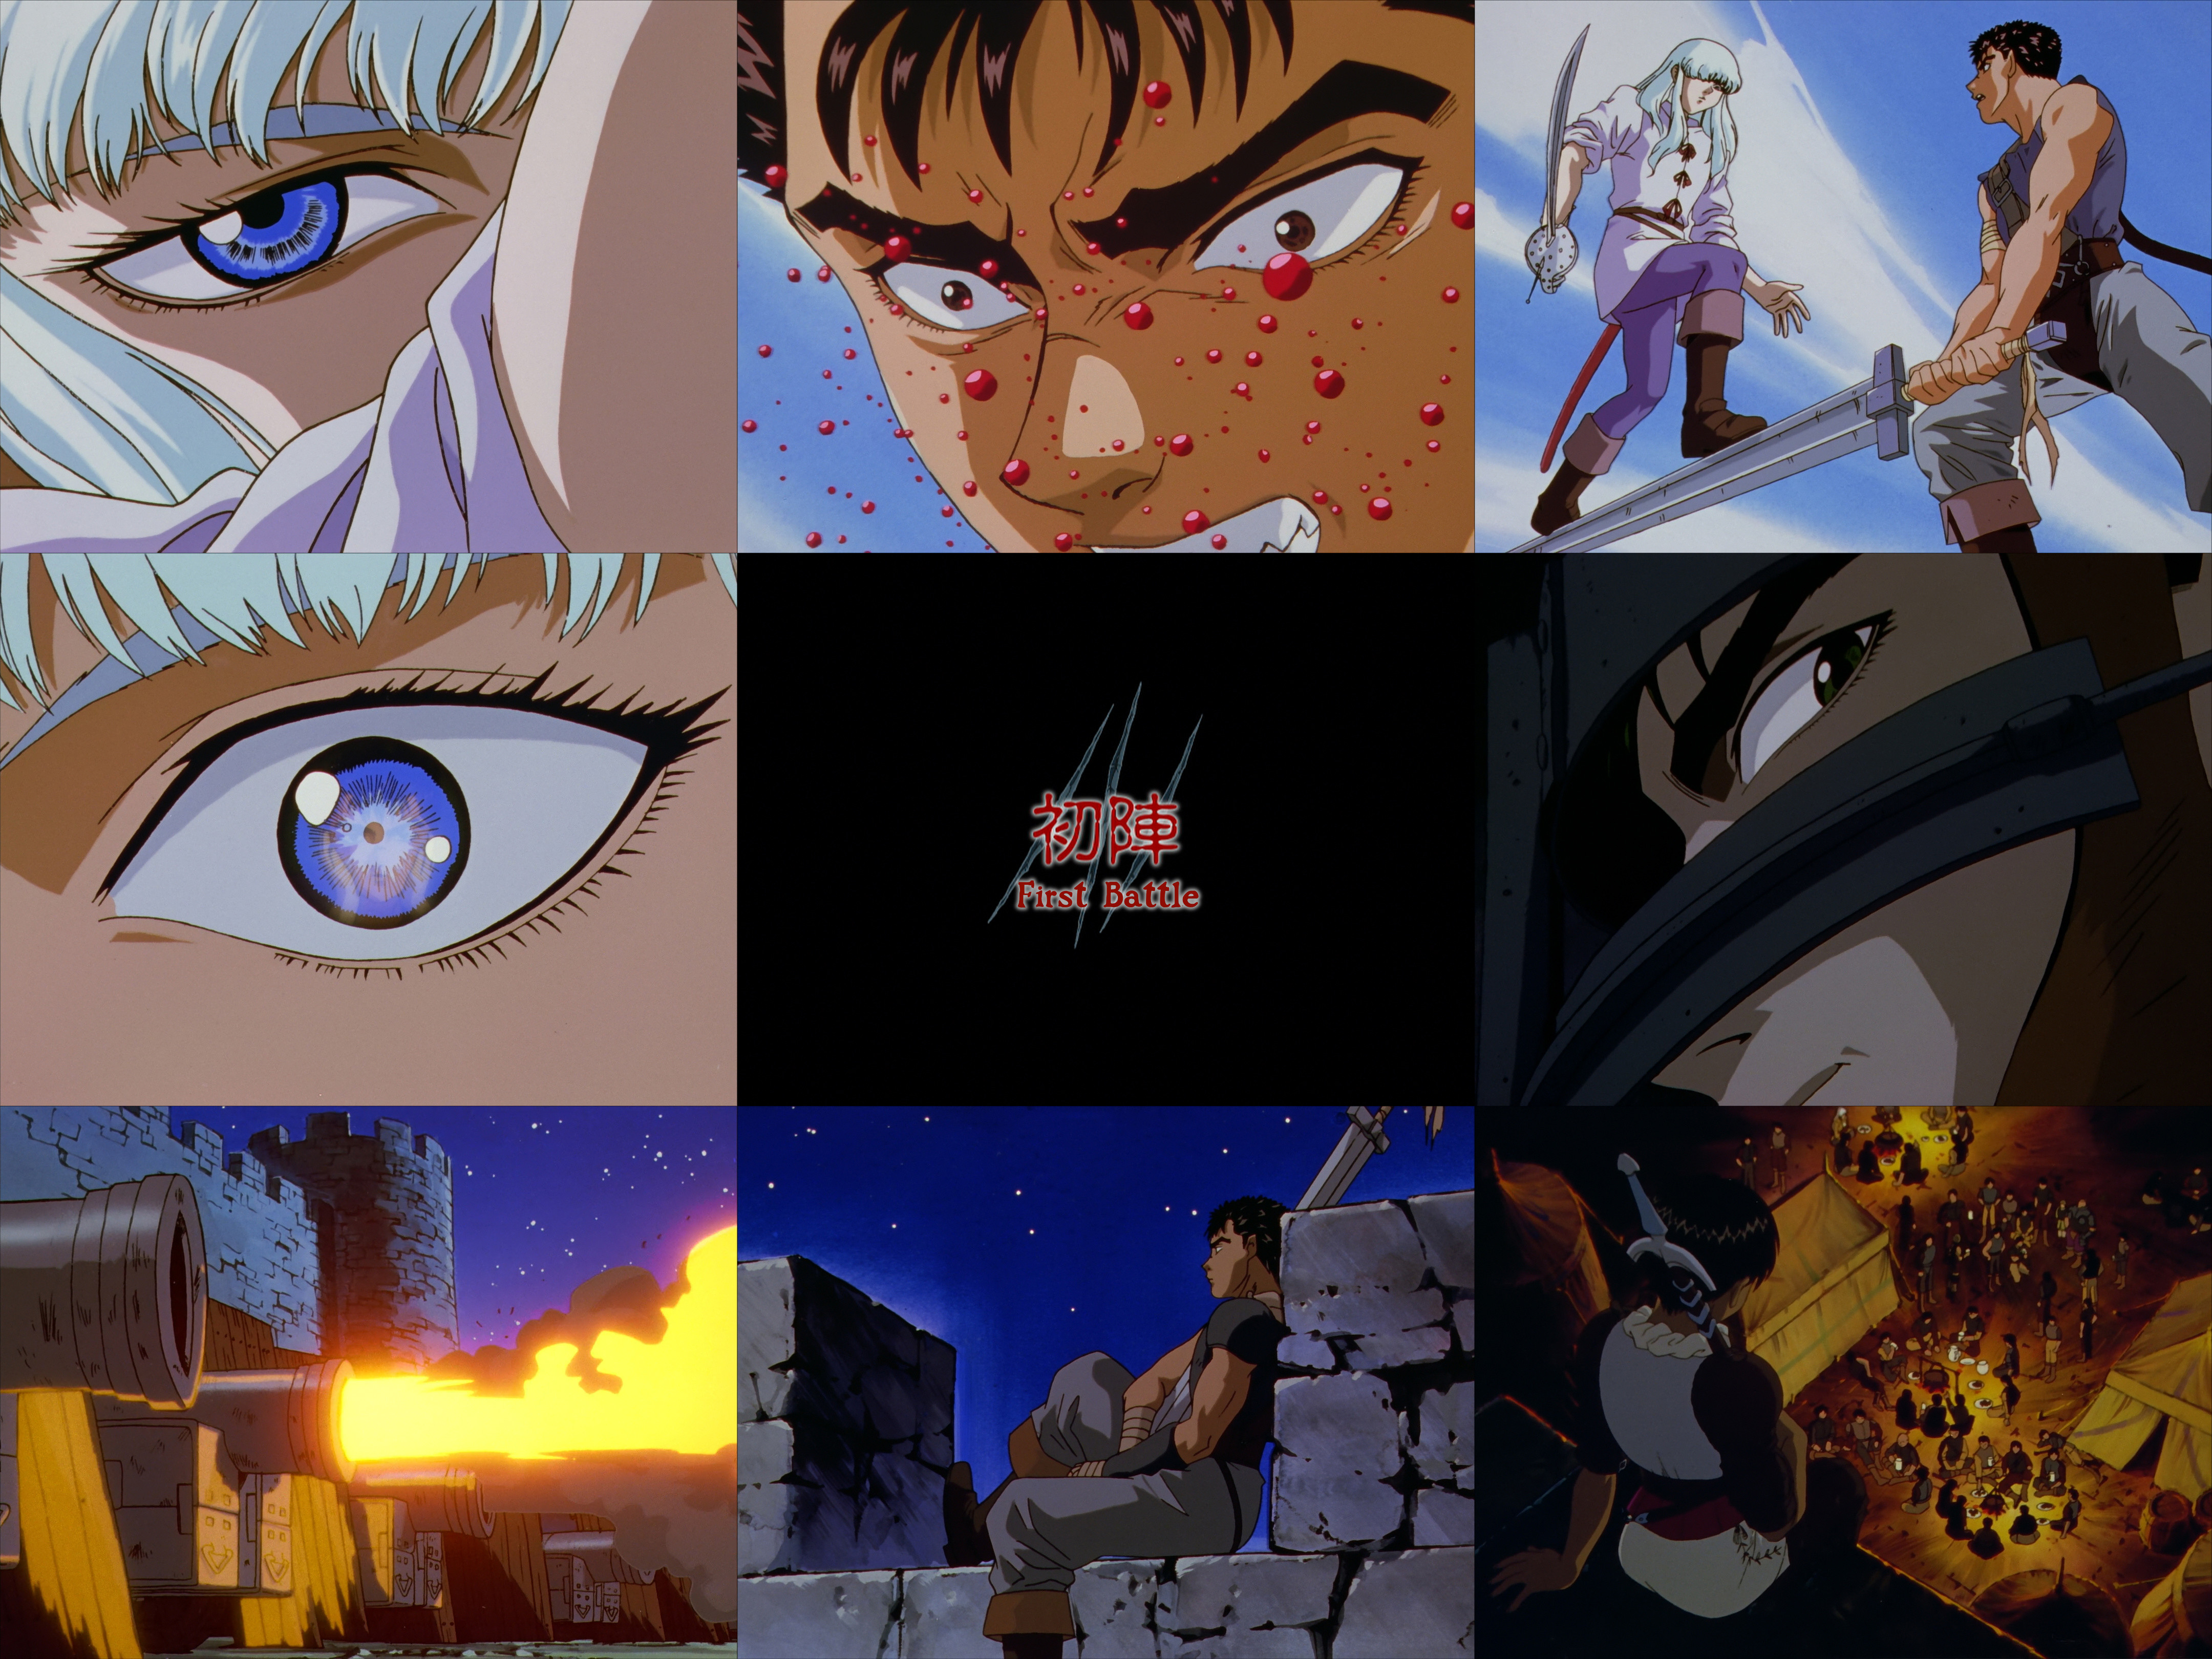 Berserk (1997) Rewatch - Episode 3 : r/anime